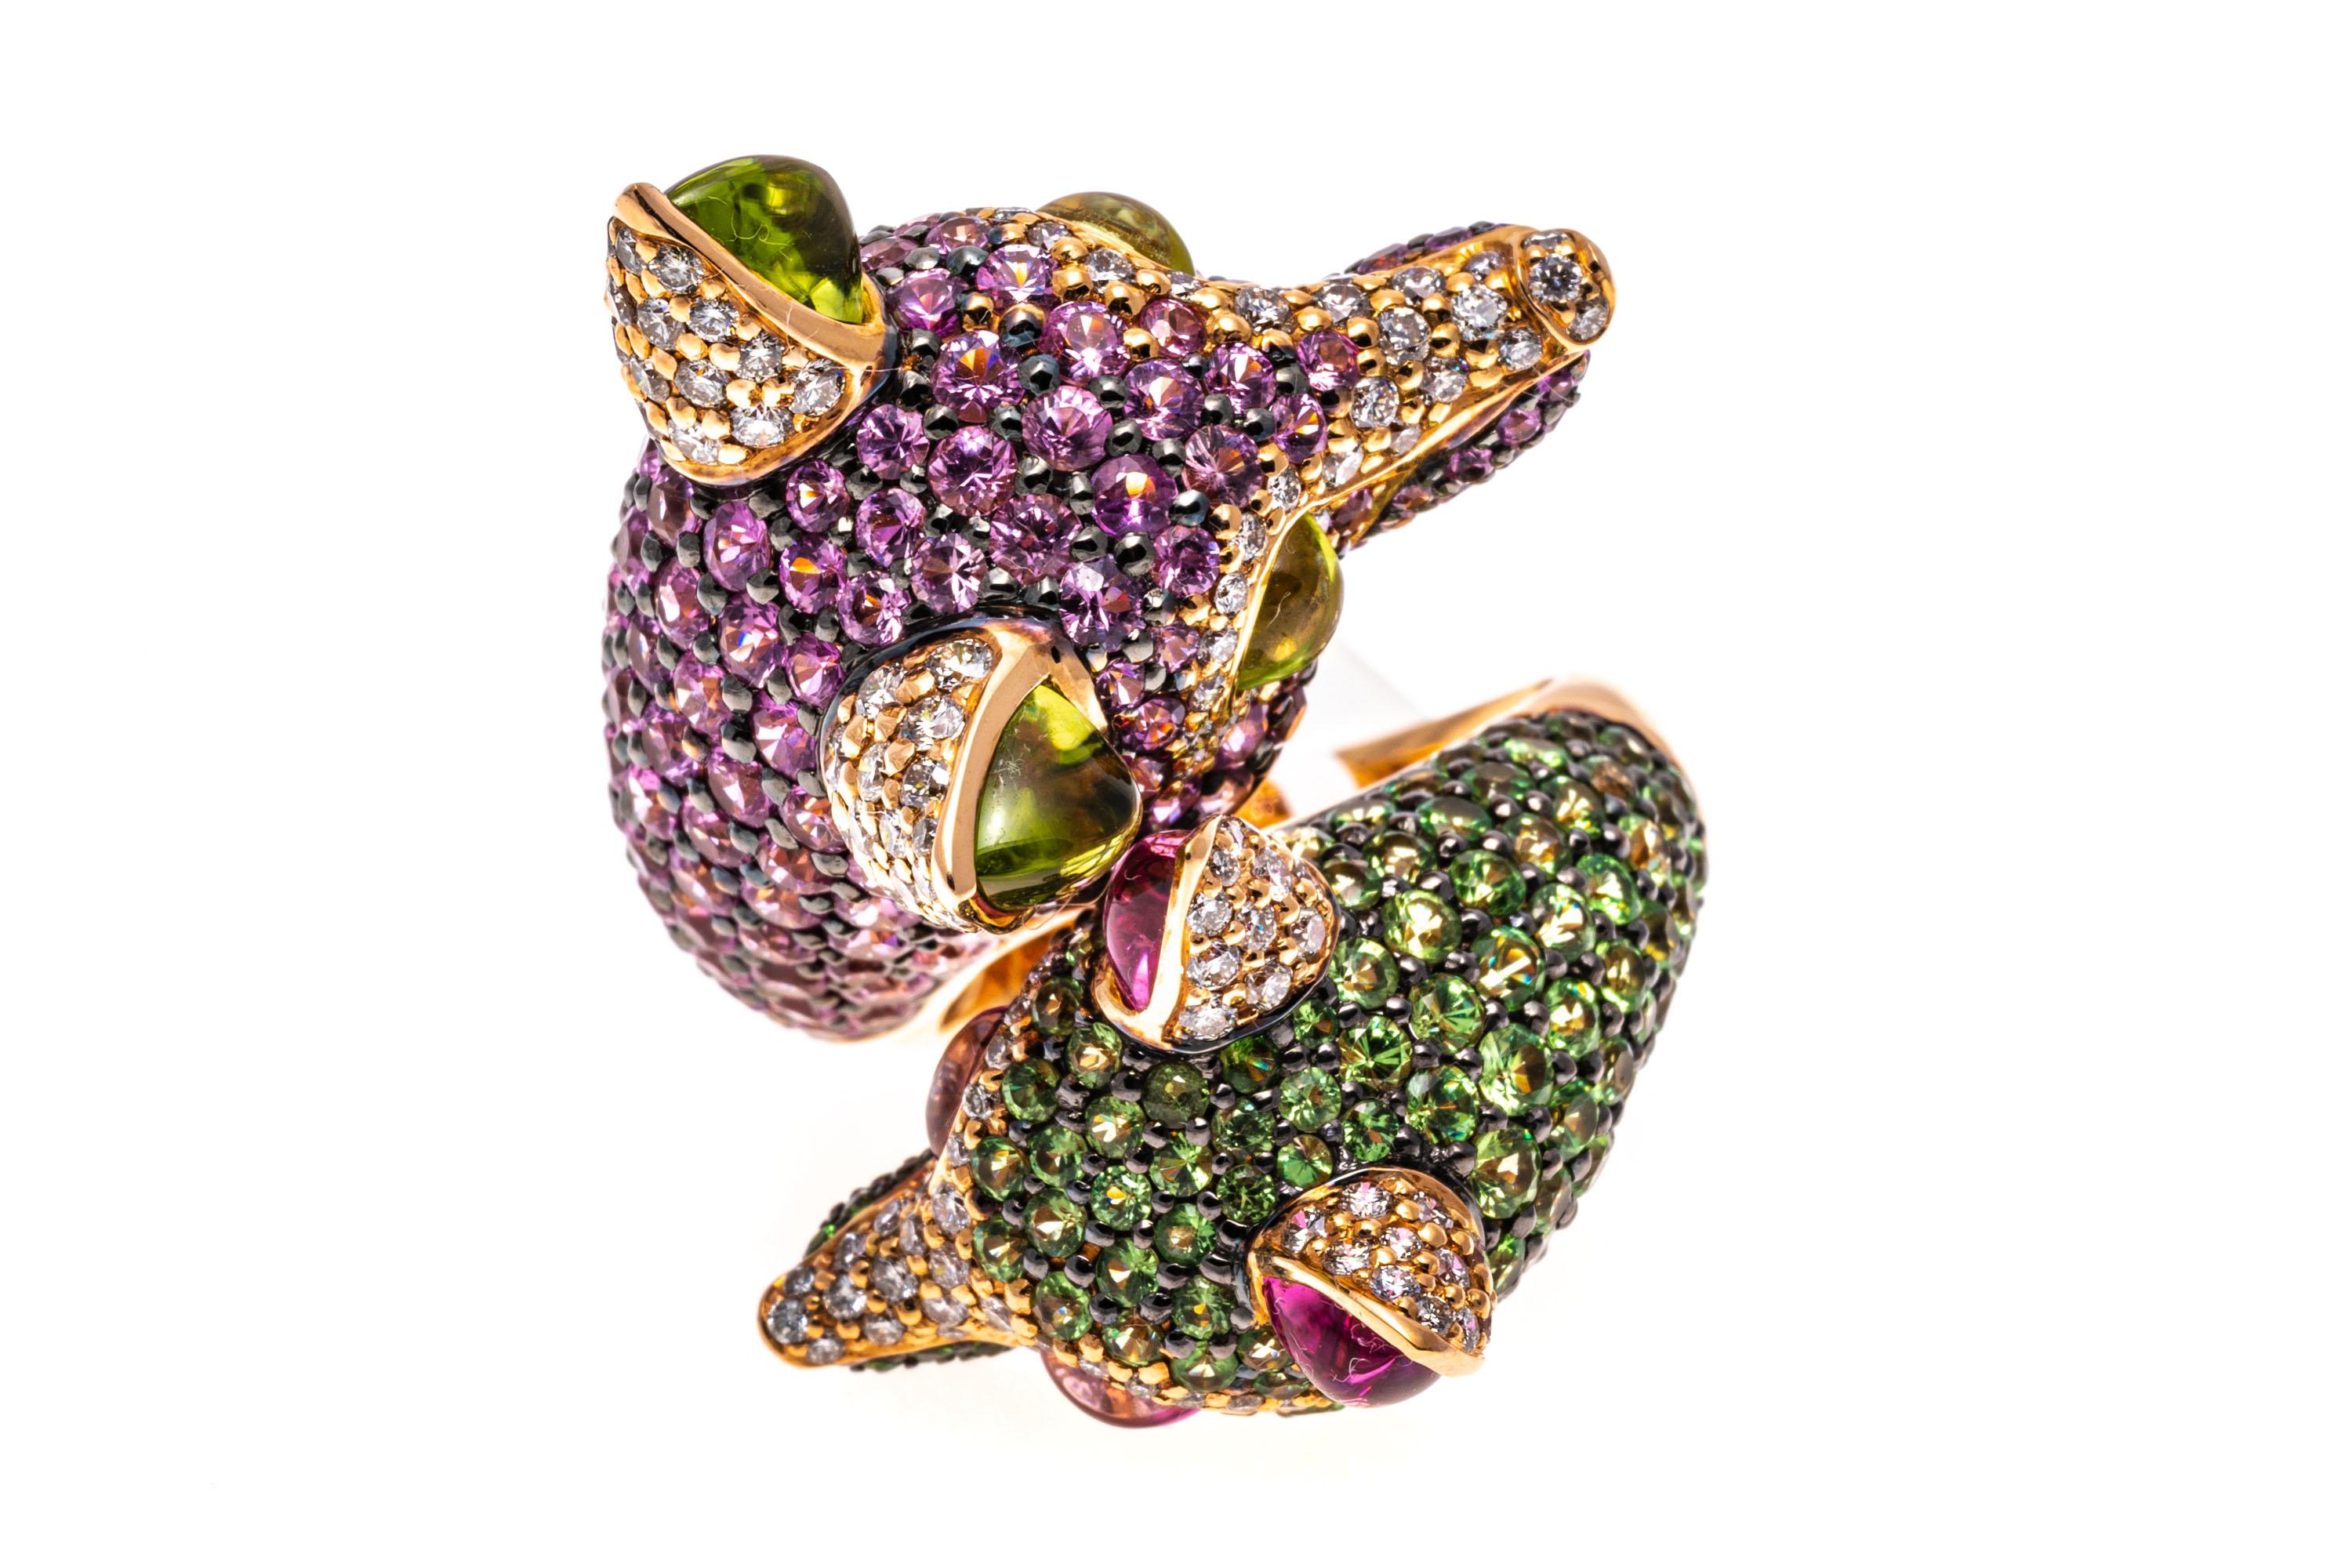 18k Rose Gold Double Fox Head Ring Set mit rosa Saphiren, Diamanten, Tsavorit, Peridot.
Dieser atemberaubende Ring ist im Bypass-Stil gehalten und zeigt zwei gegenüberliegende, komplementäre Fuchsköpfe. Der erste und größere Fuchs ist mit runden,